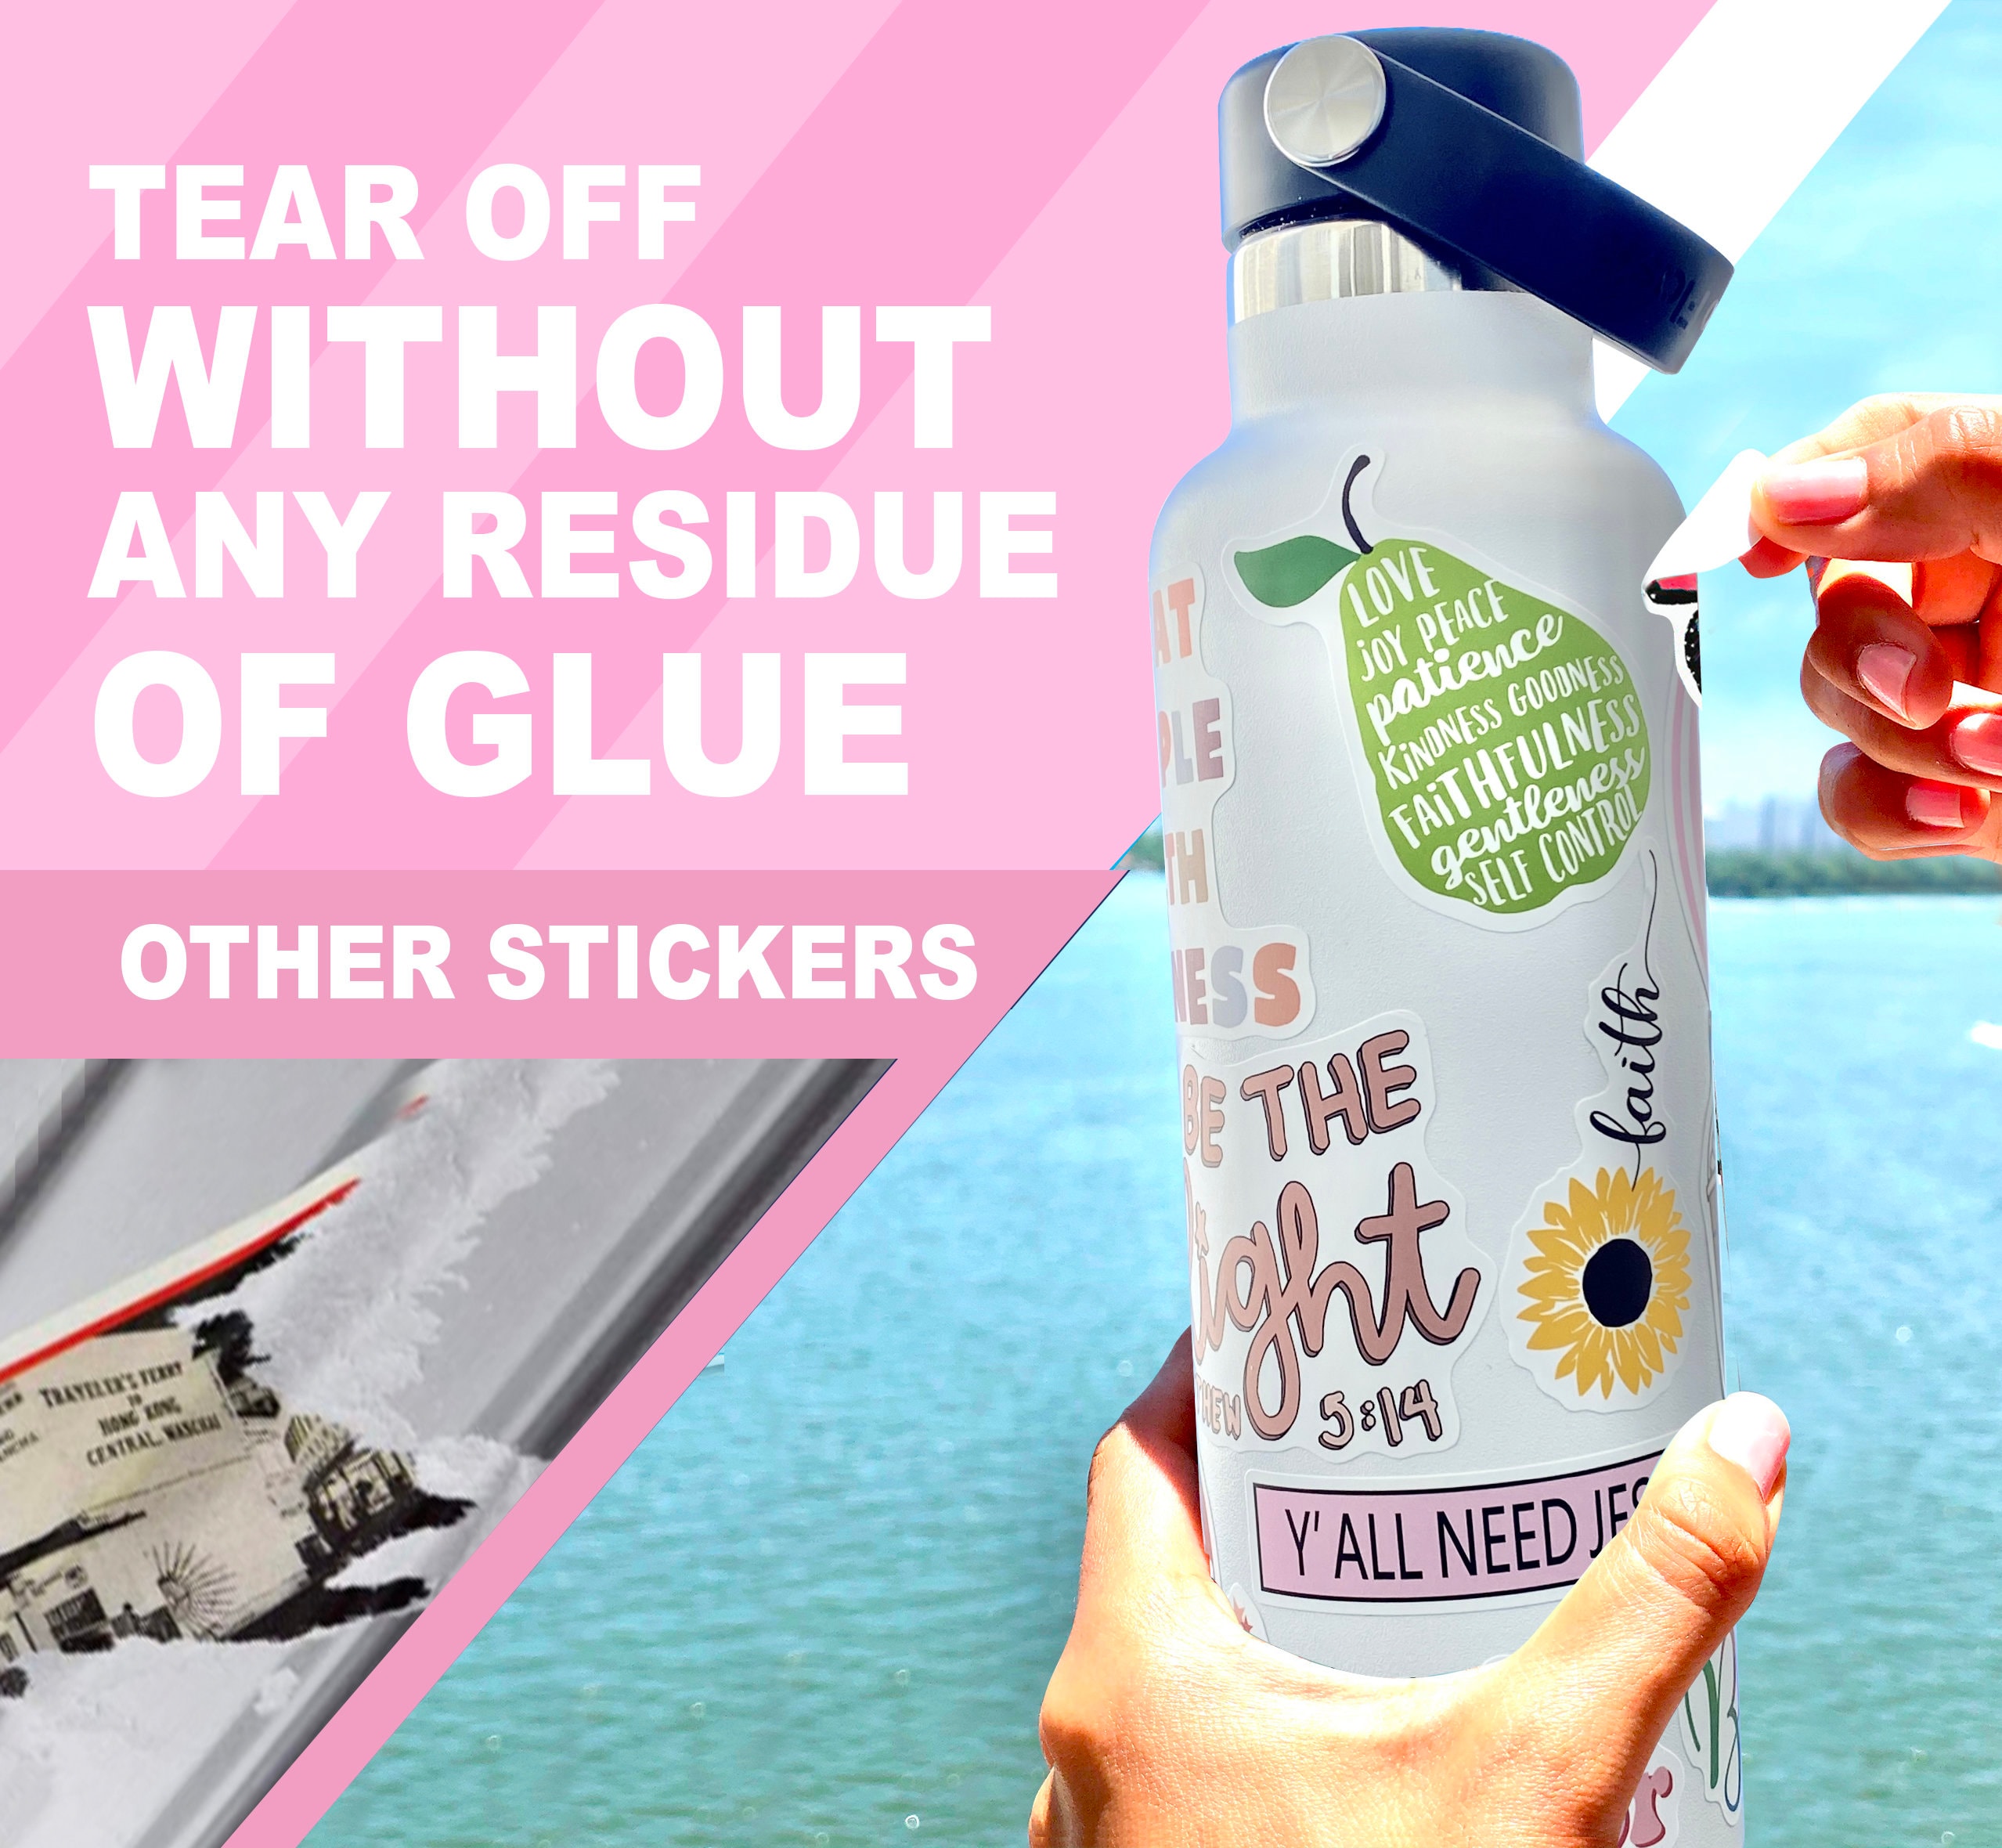 100 Pack Inspiring Christian Stickers for Water Bottles, Laptops